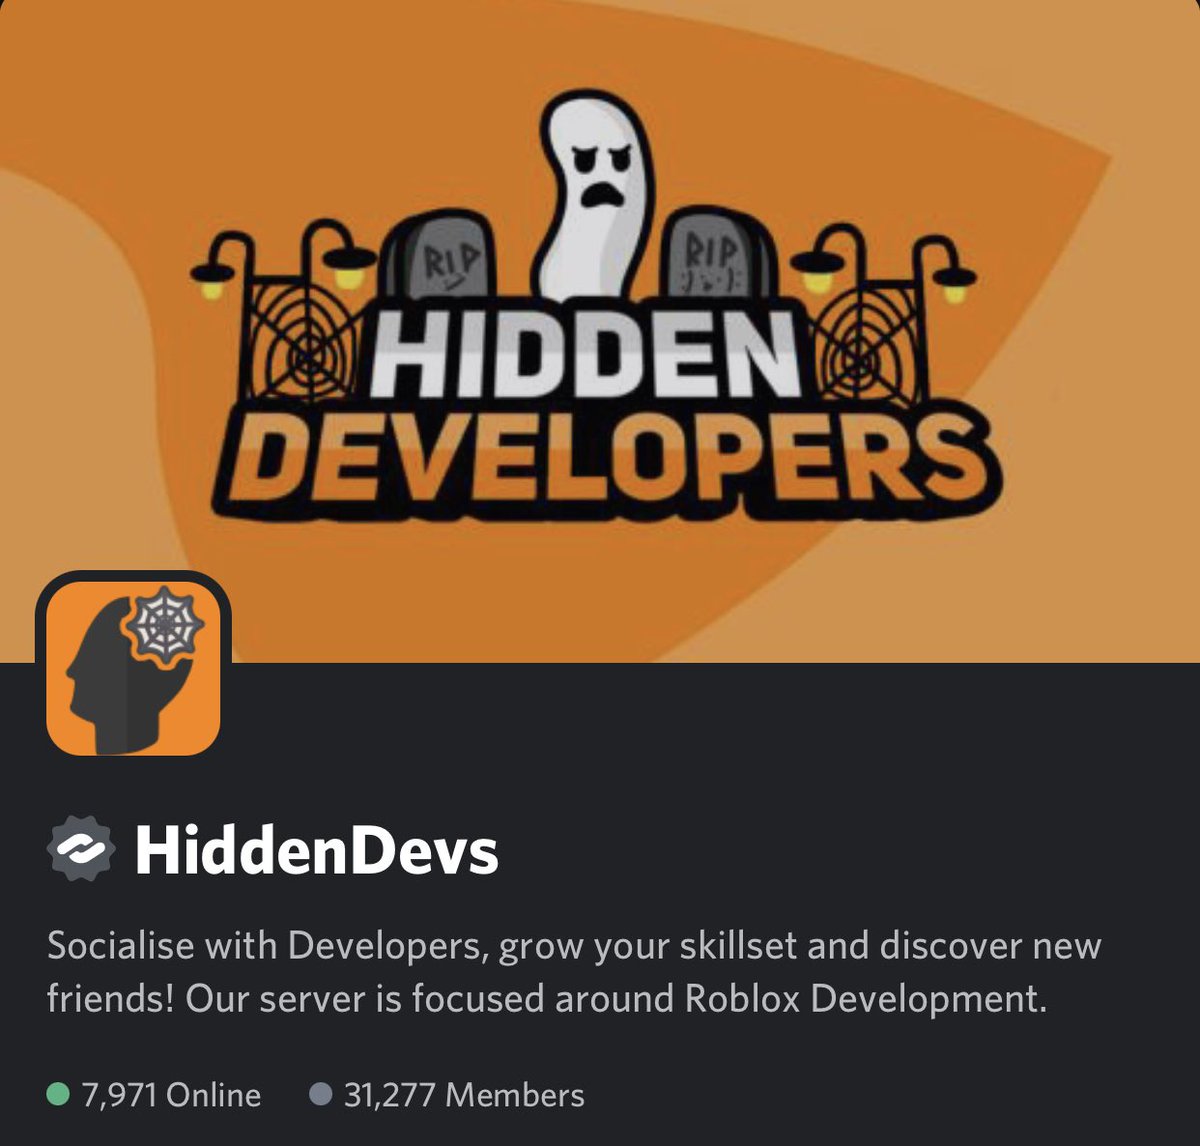 Hiddendevs Hiddendevs Twitter - roblox hidden developers